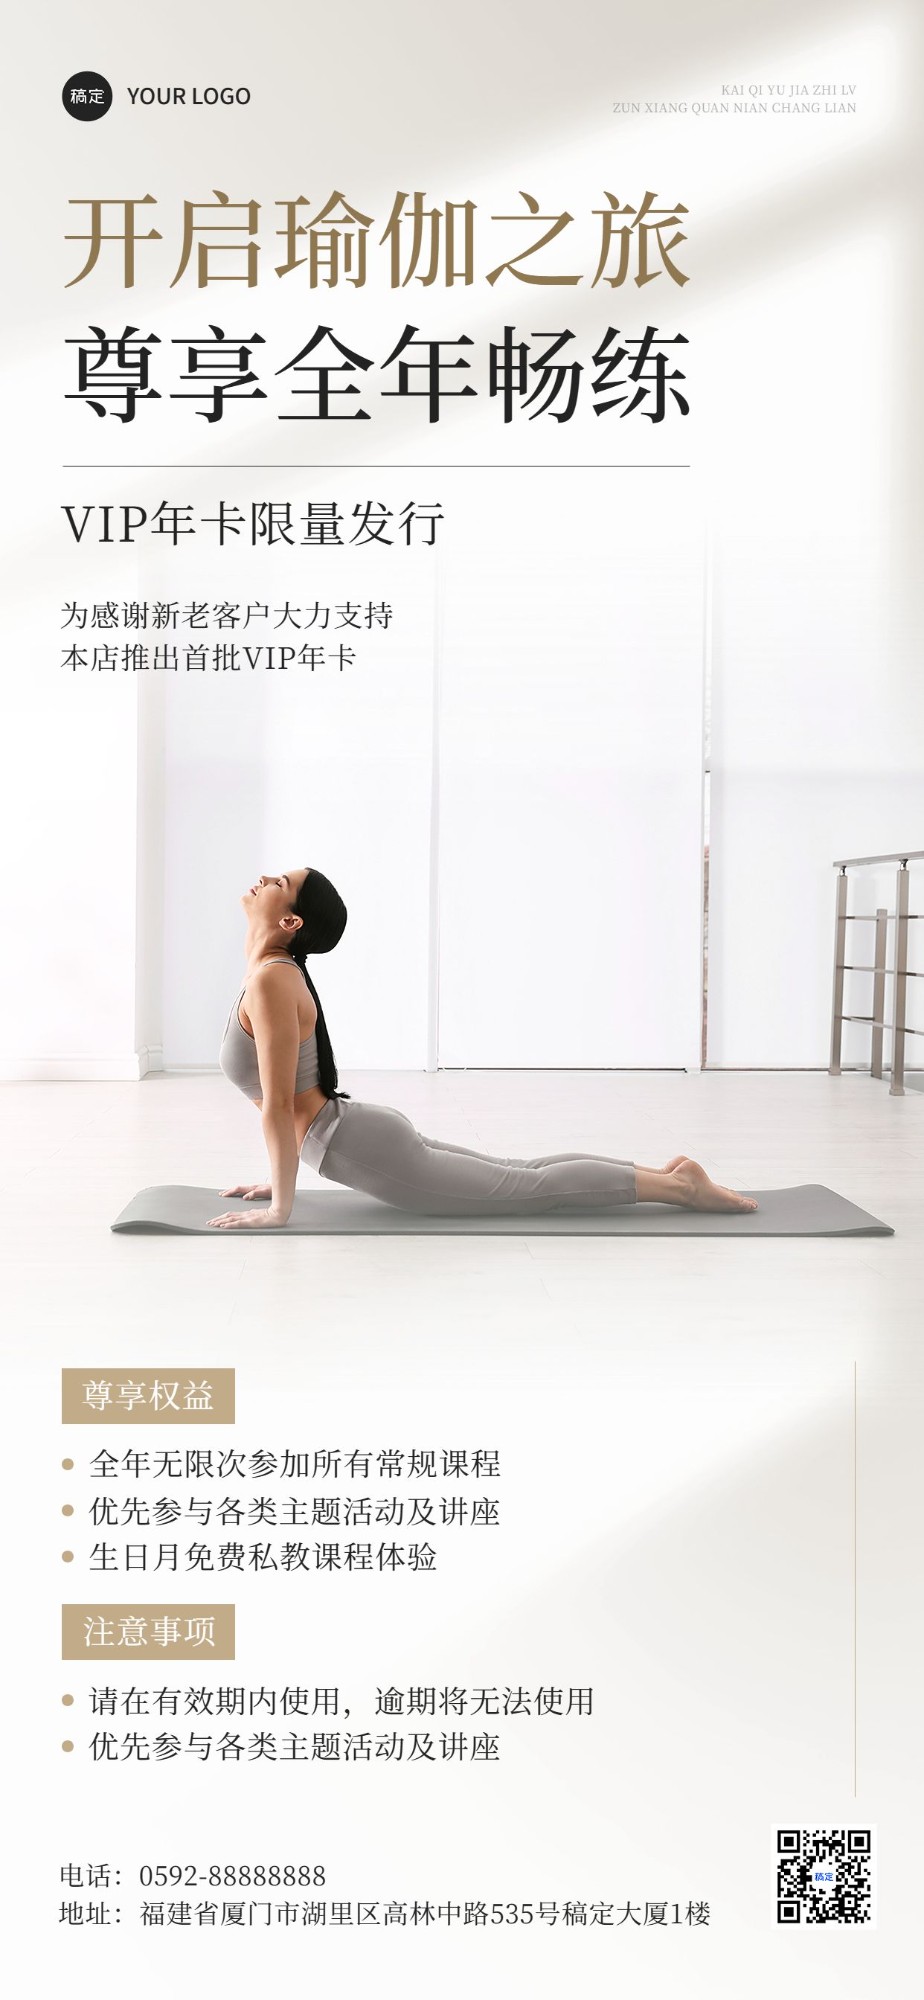 生活服务瑜伽美业卡项促销全屏竖版海报